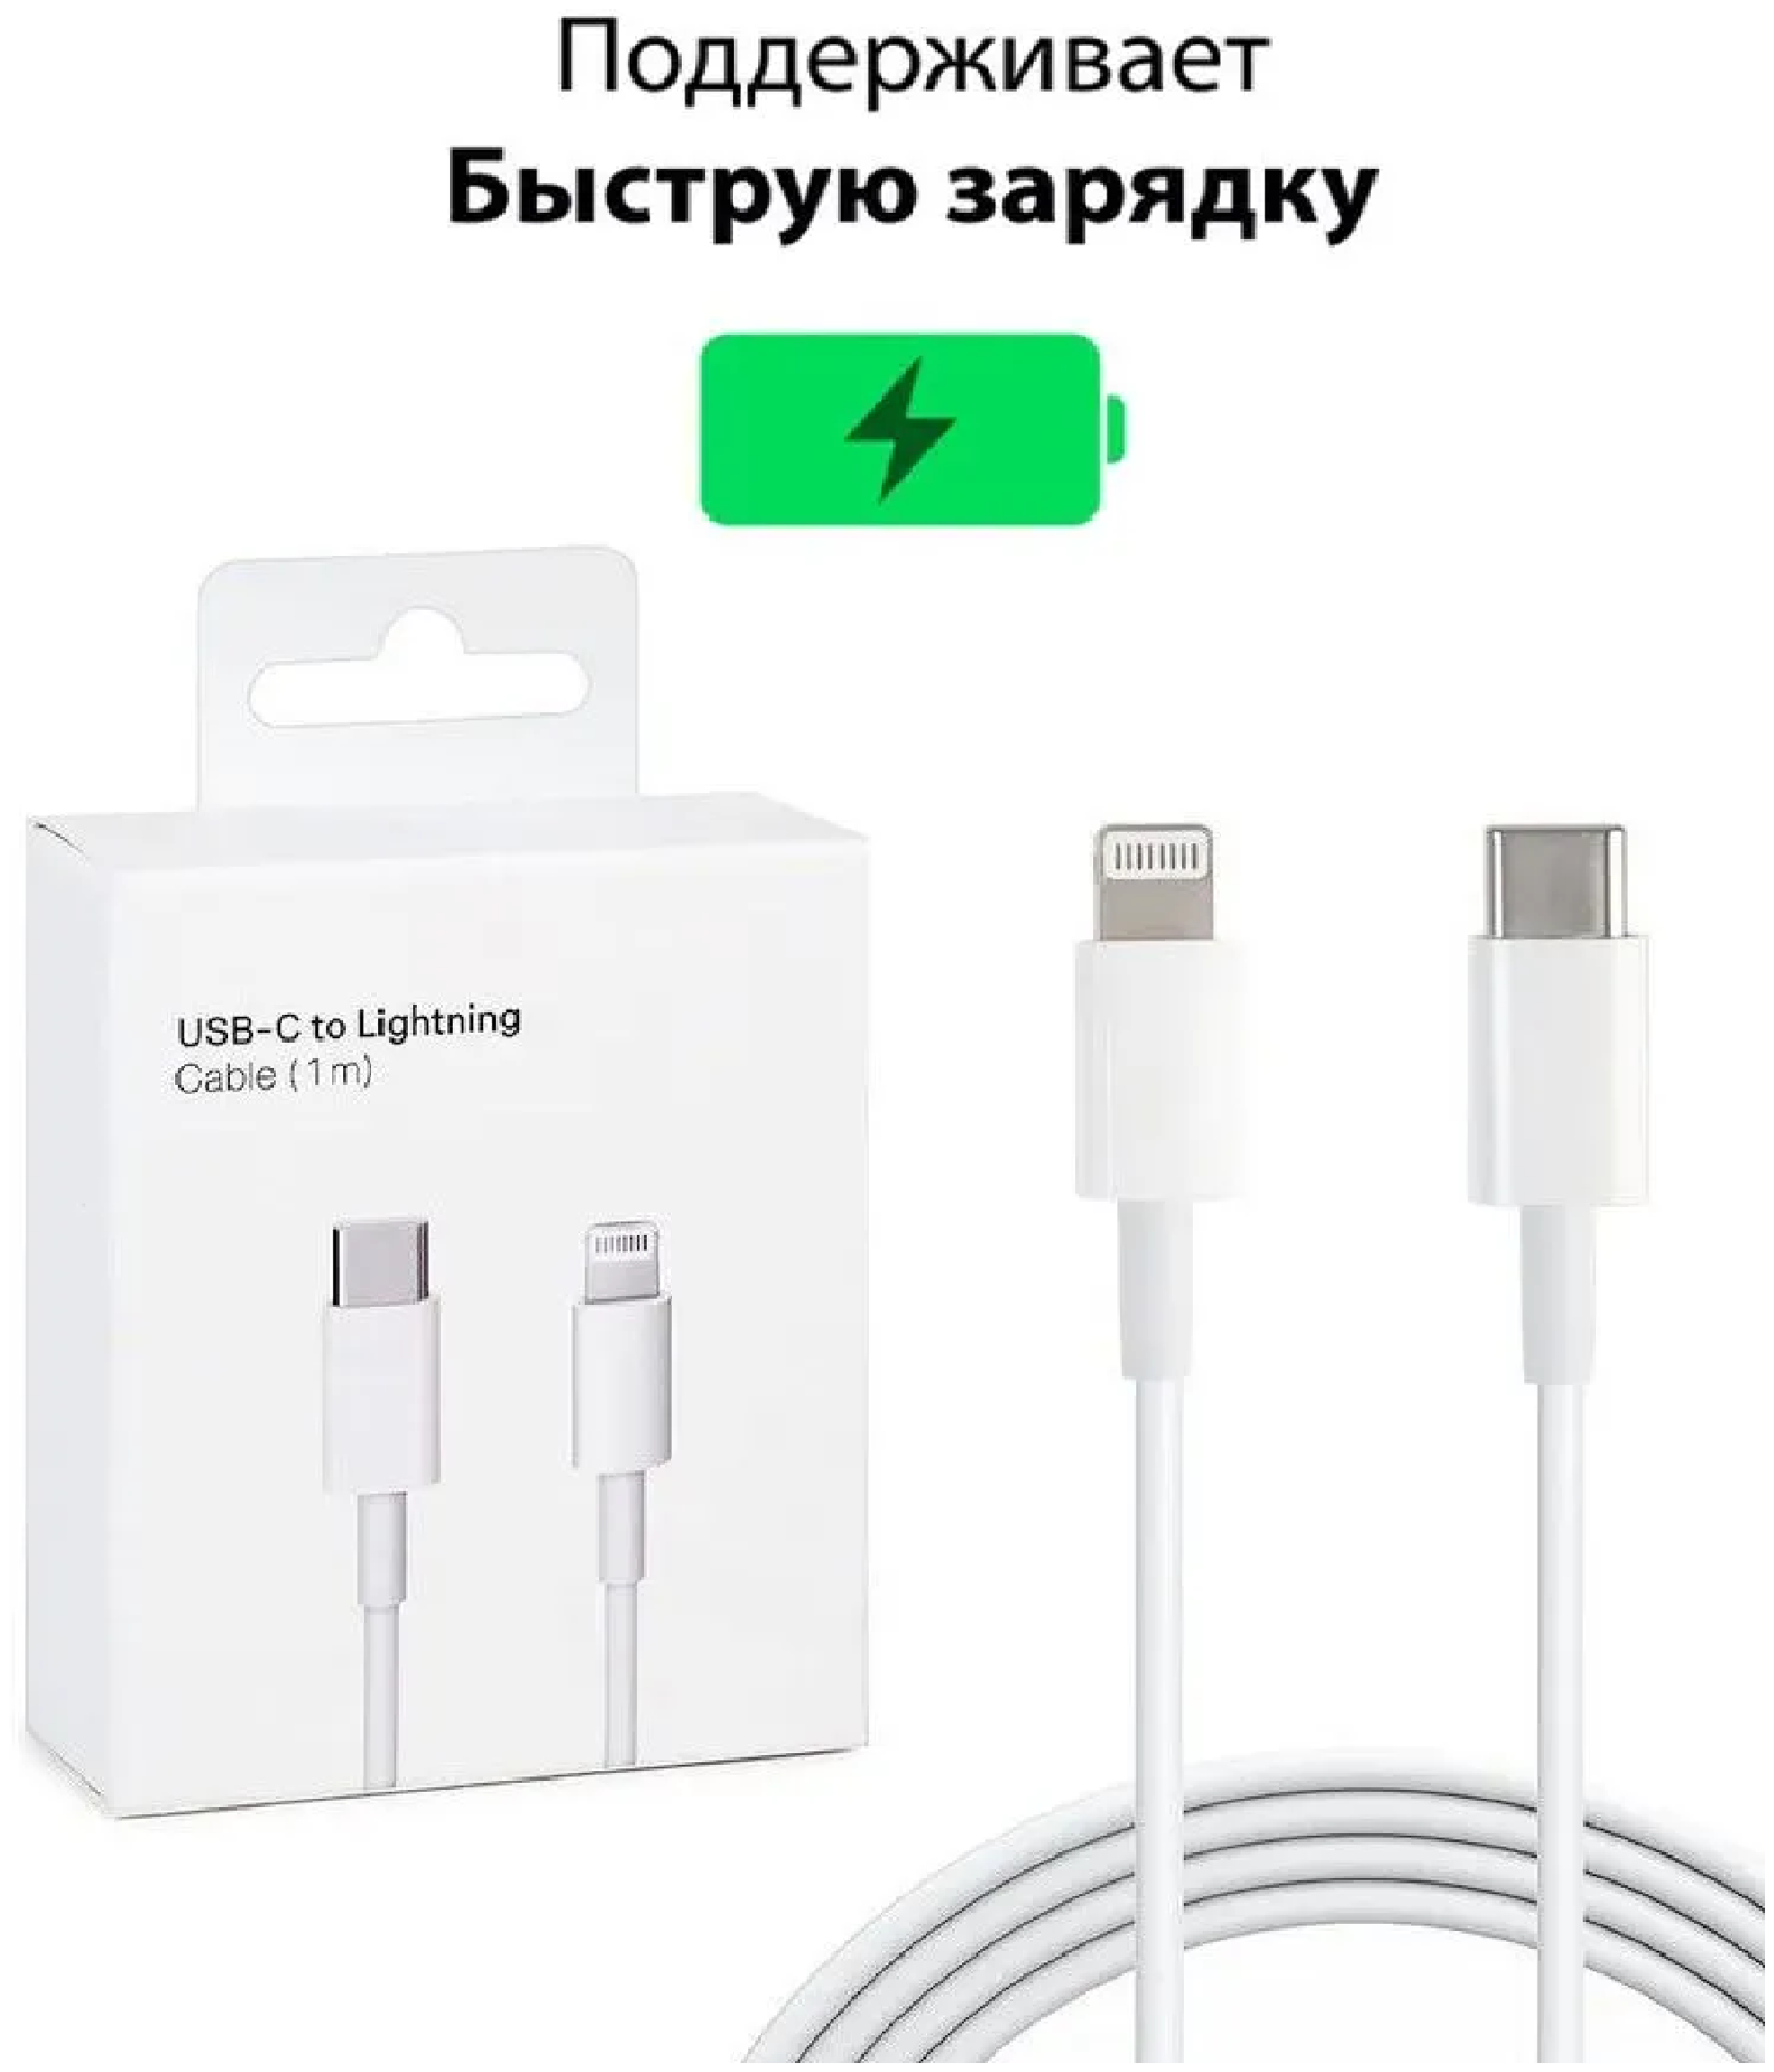 Кабель Type-C / lightning для Apple iPhone iPad и AirPods кабель для быстрой зарядки провод для айфона 1 метр White белый В коробке